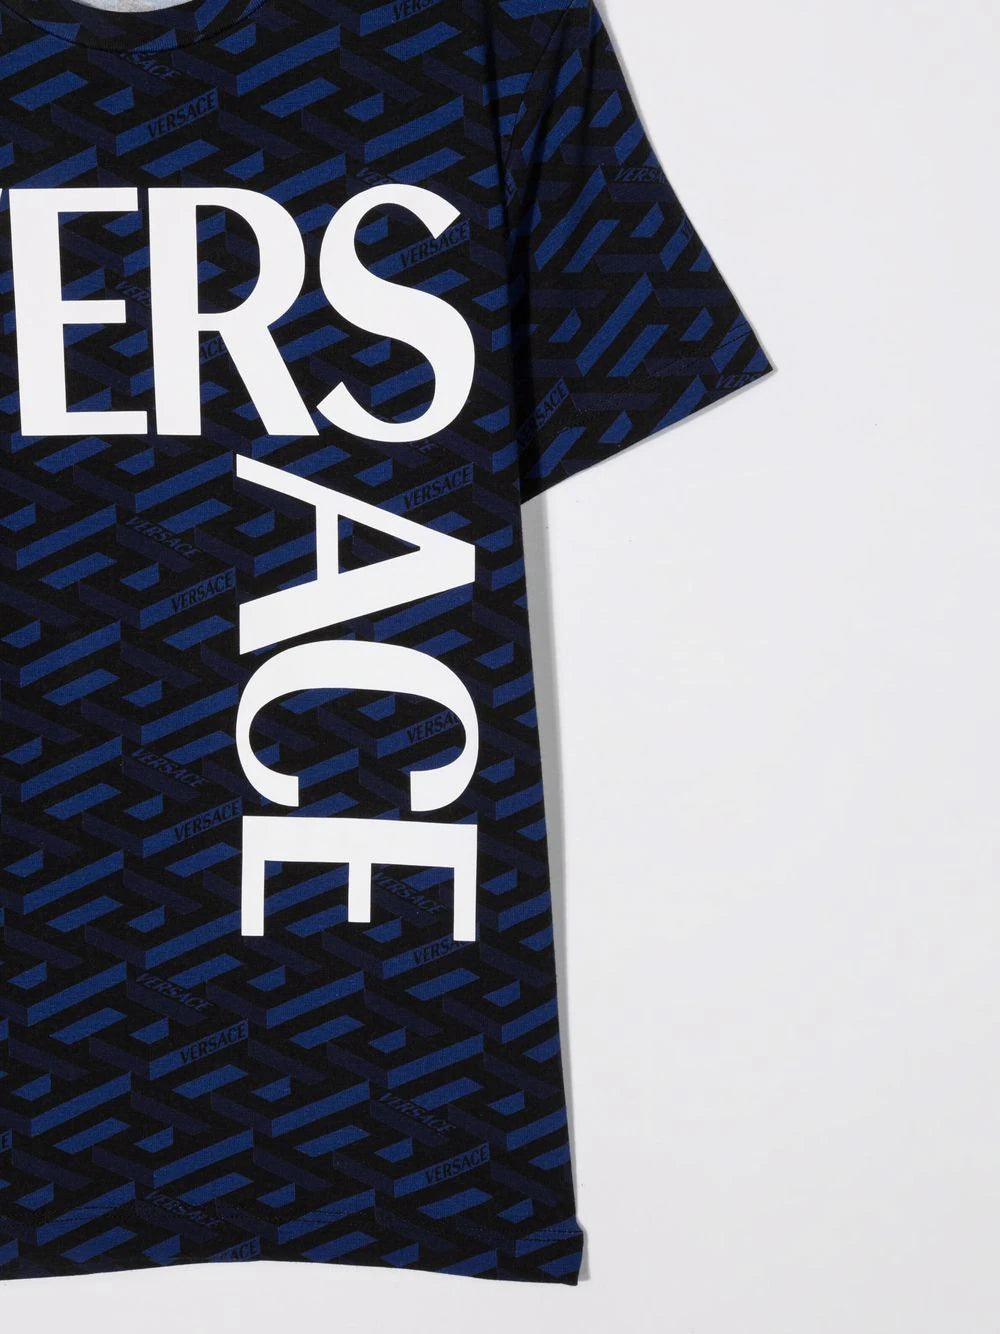 Versace Logo Kids T-Shirt